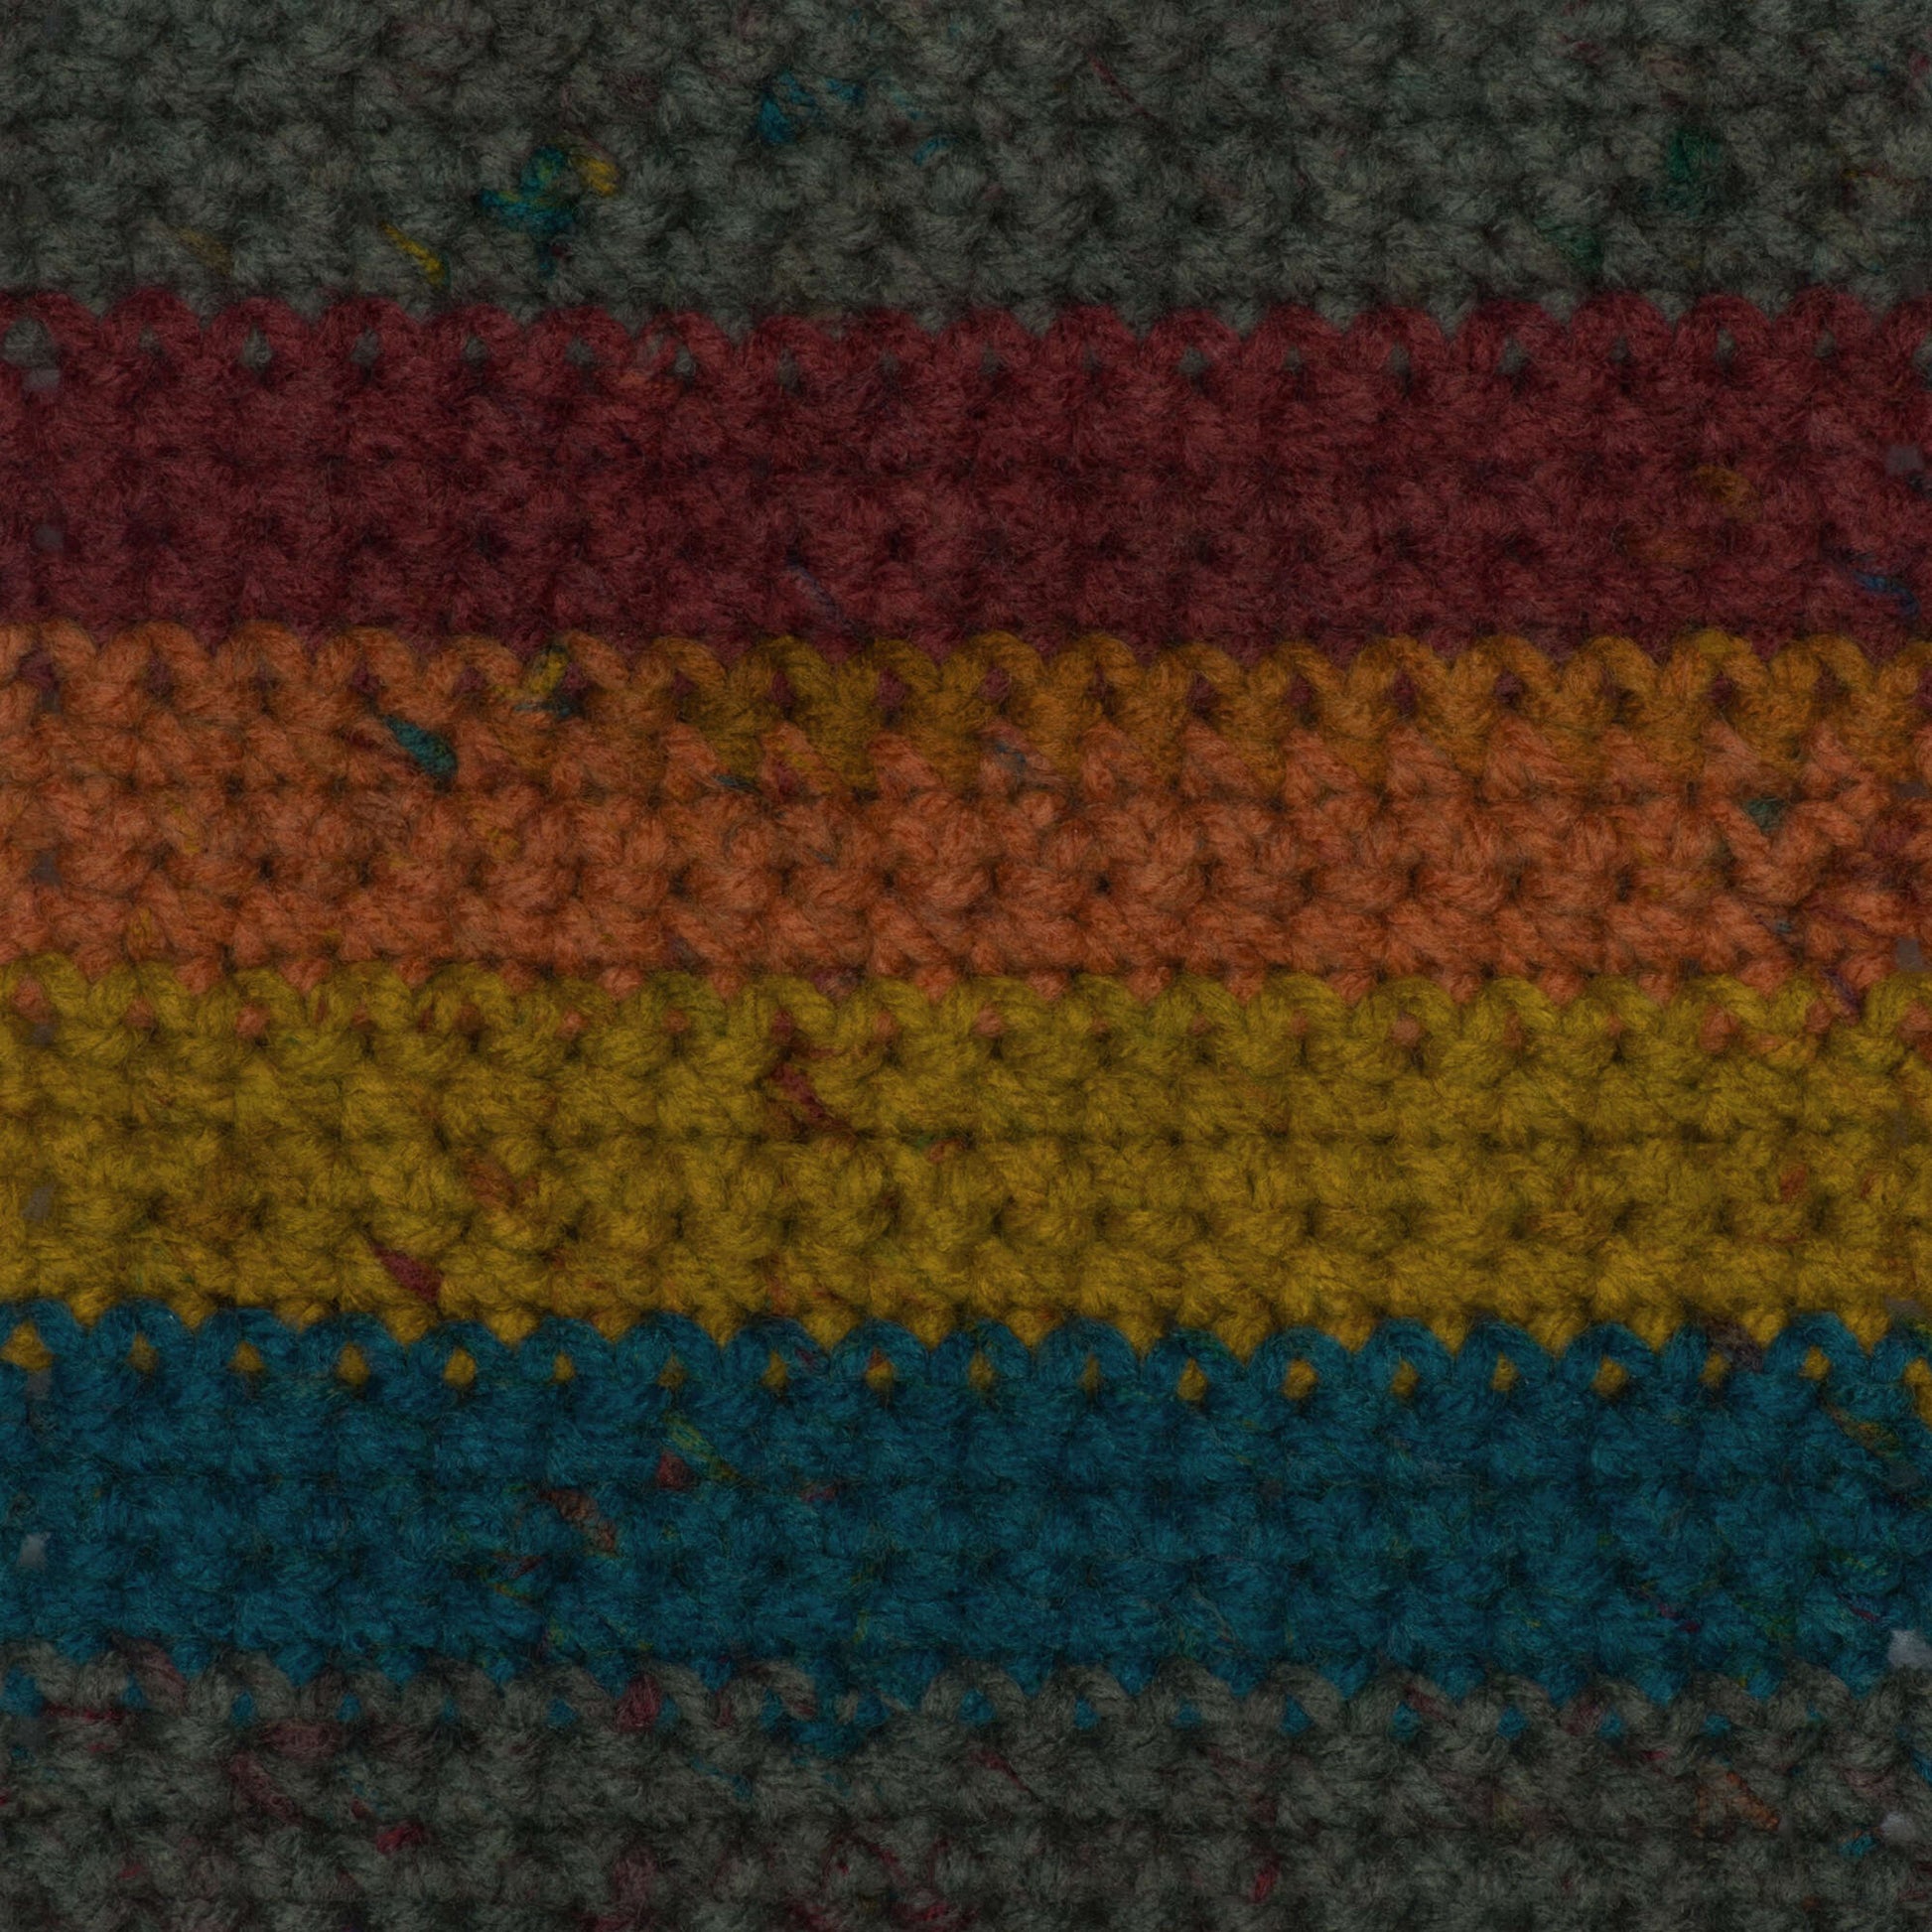 Caron Big Cakes Self Striping Yarn ~ 603 yd/551 M / 10.5oz/300 G Each (Toffee Brickle)